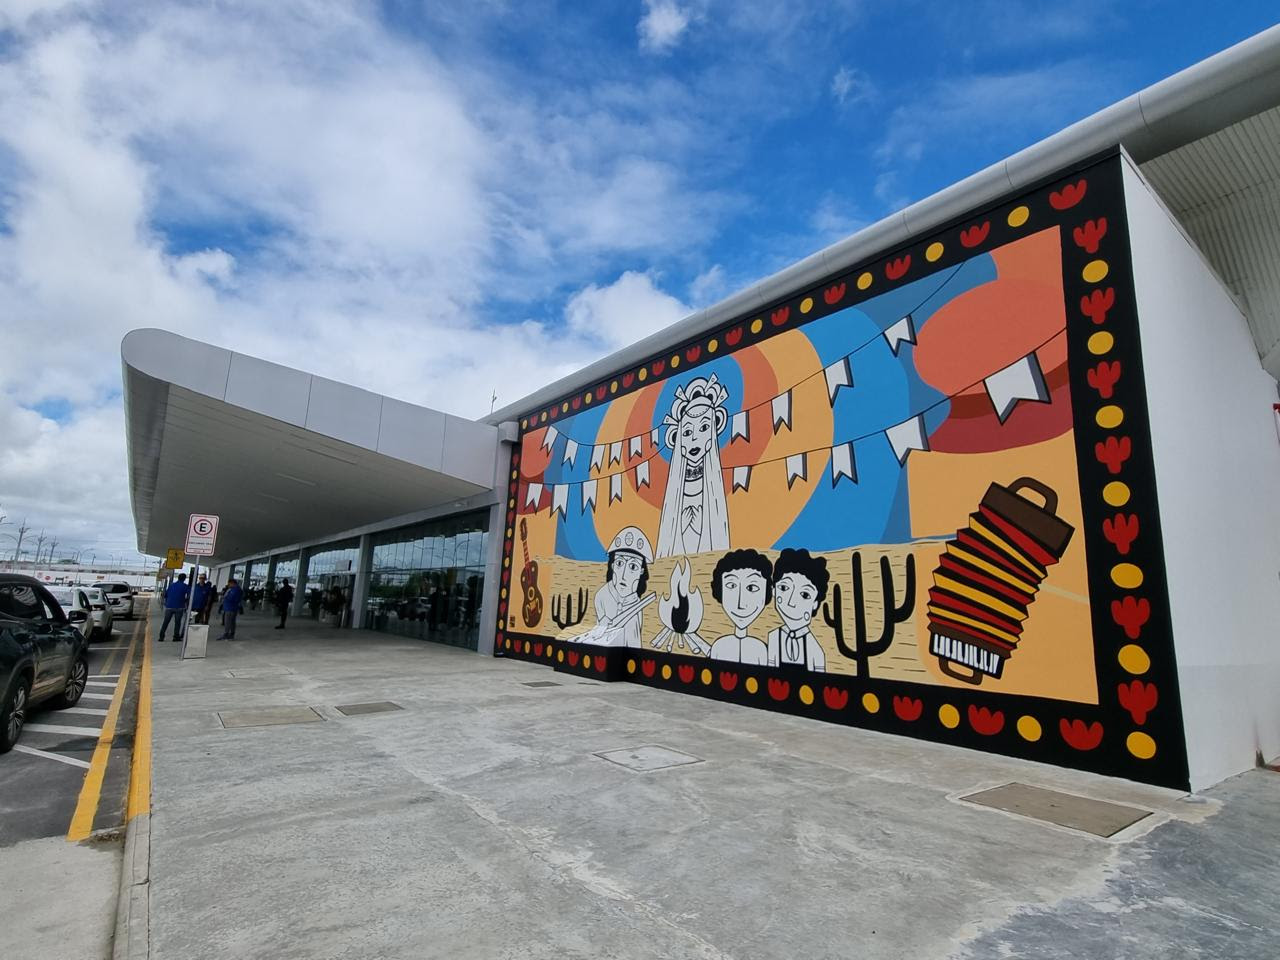  Aeroporto de Campina Grande Inaugura Painel em Homenagem a Ariano Suassuna